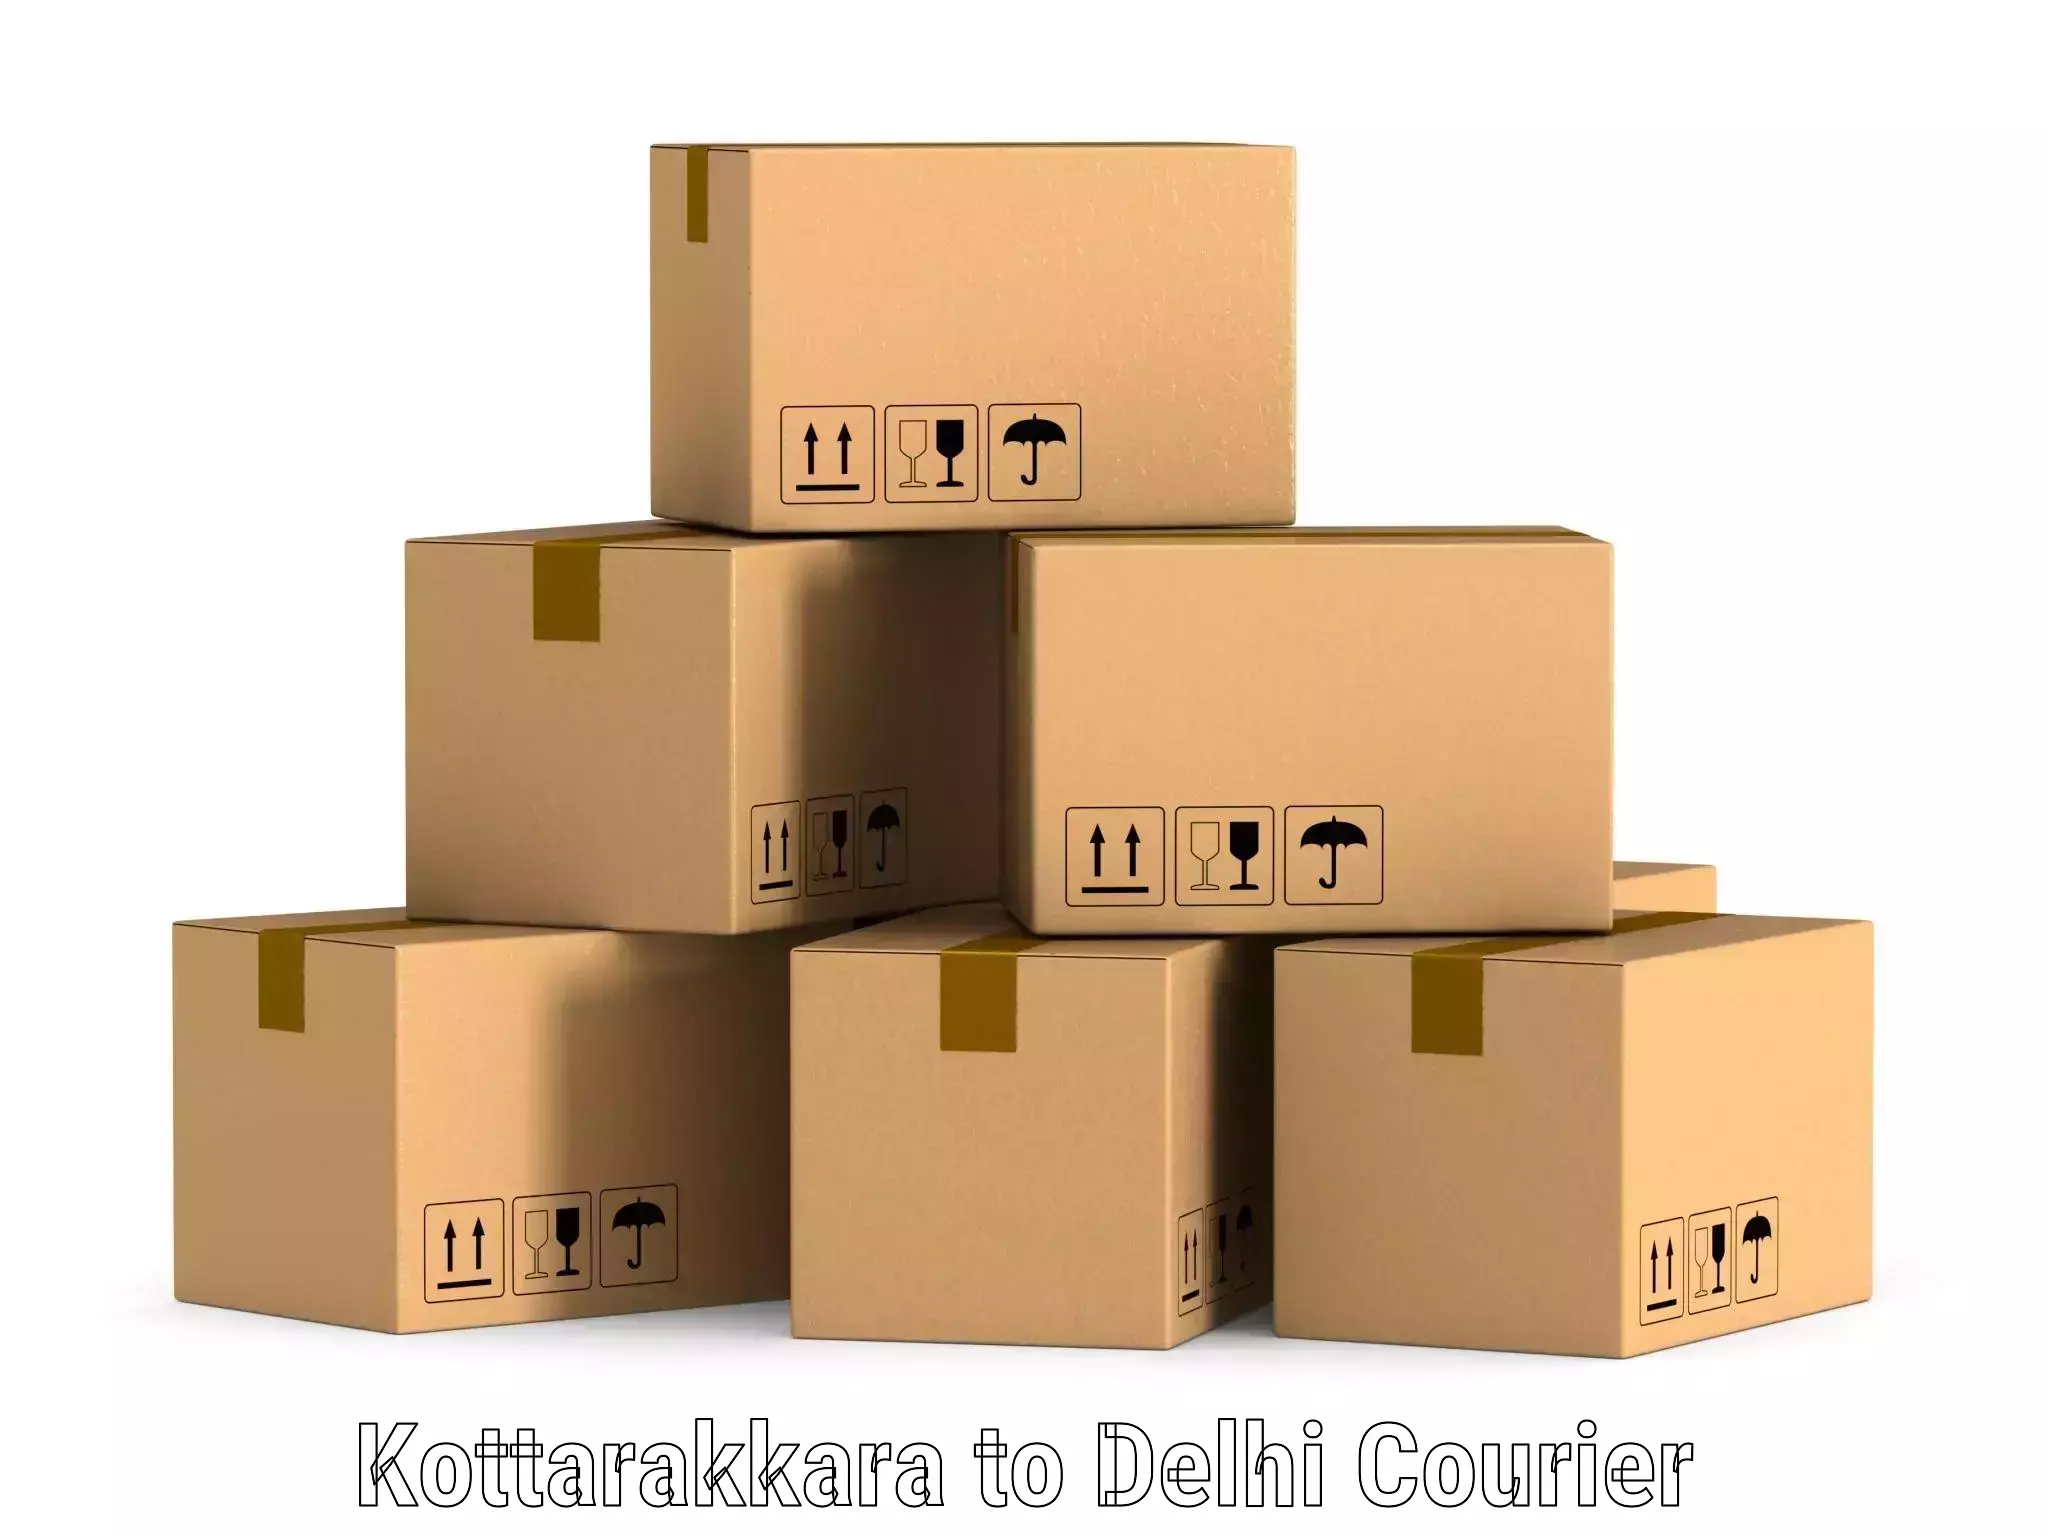 Global courier networks Kottarakkara to East Delhi